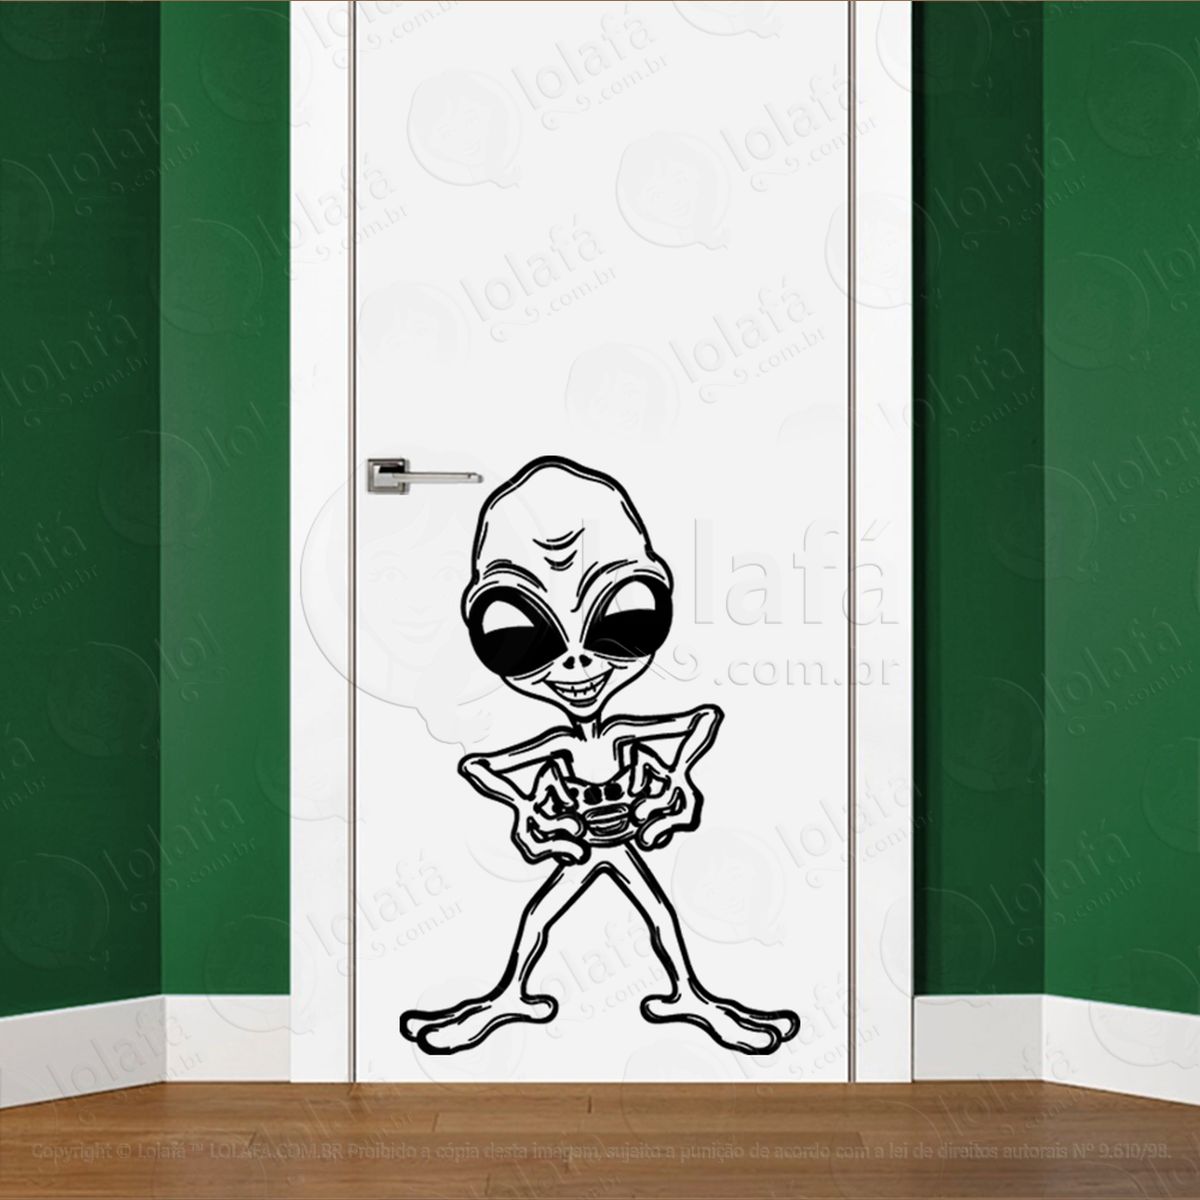 alien dos games adesivo alienígena de parede para quarto, porta e vidro - mod:22